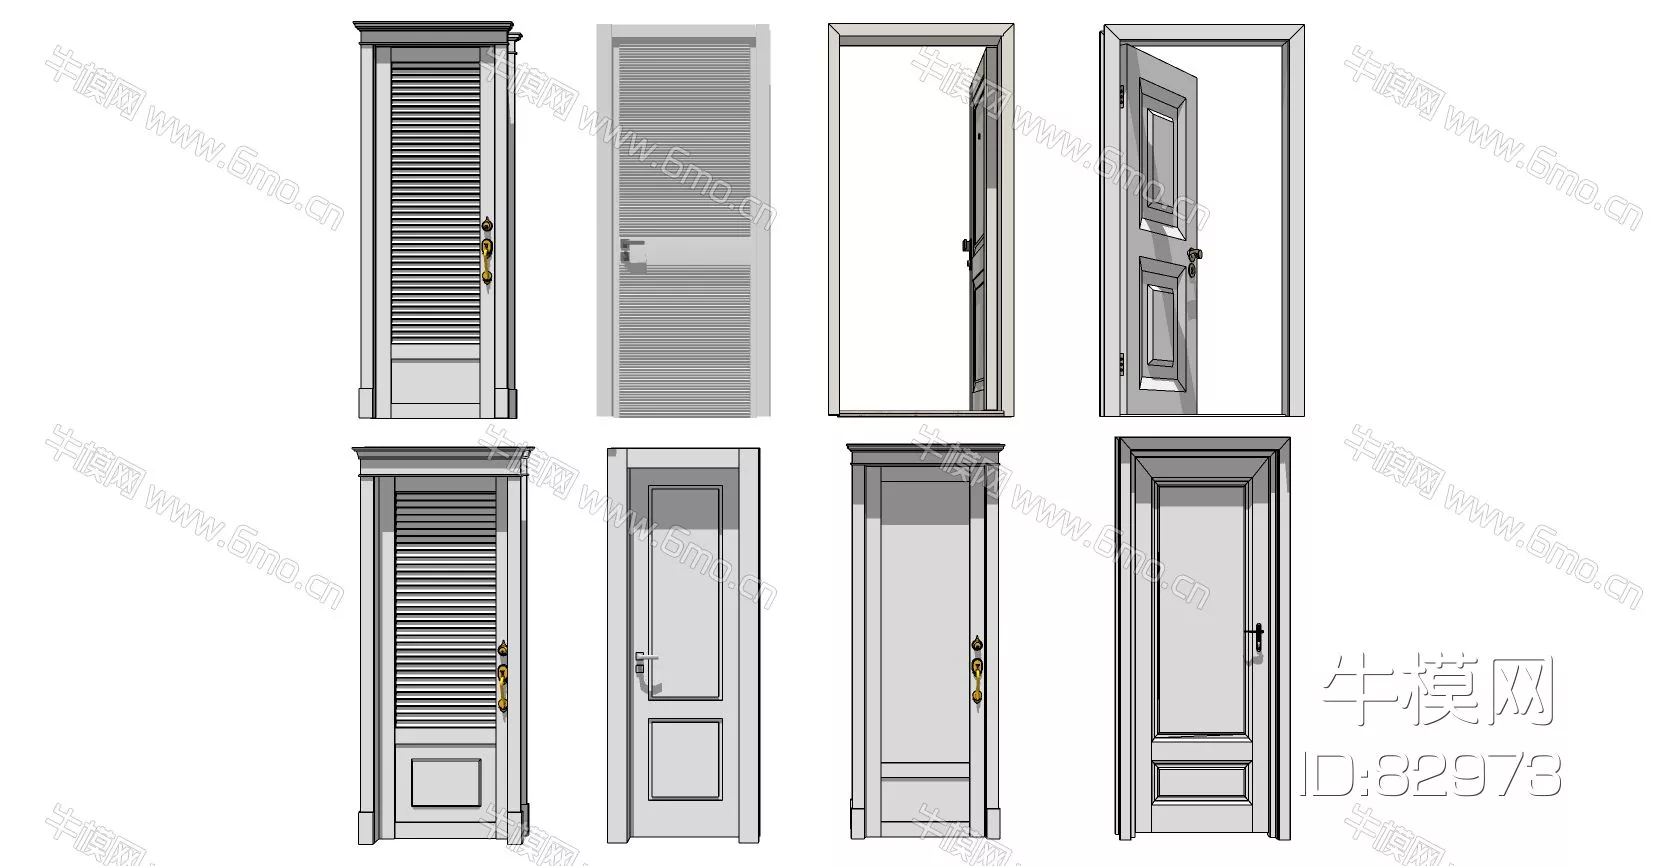 EUROPE DOOR AND WINDOWS - SKETCHUP 3D MODEL - ENSCAPE - 82973